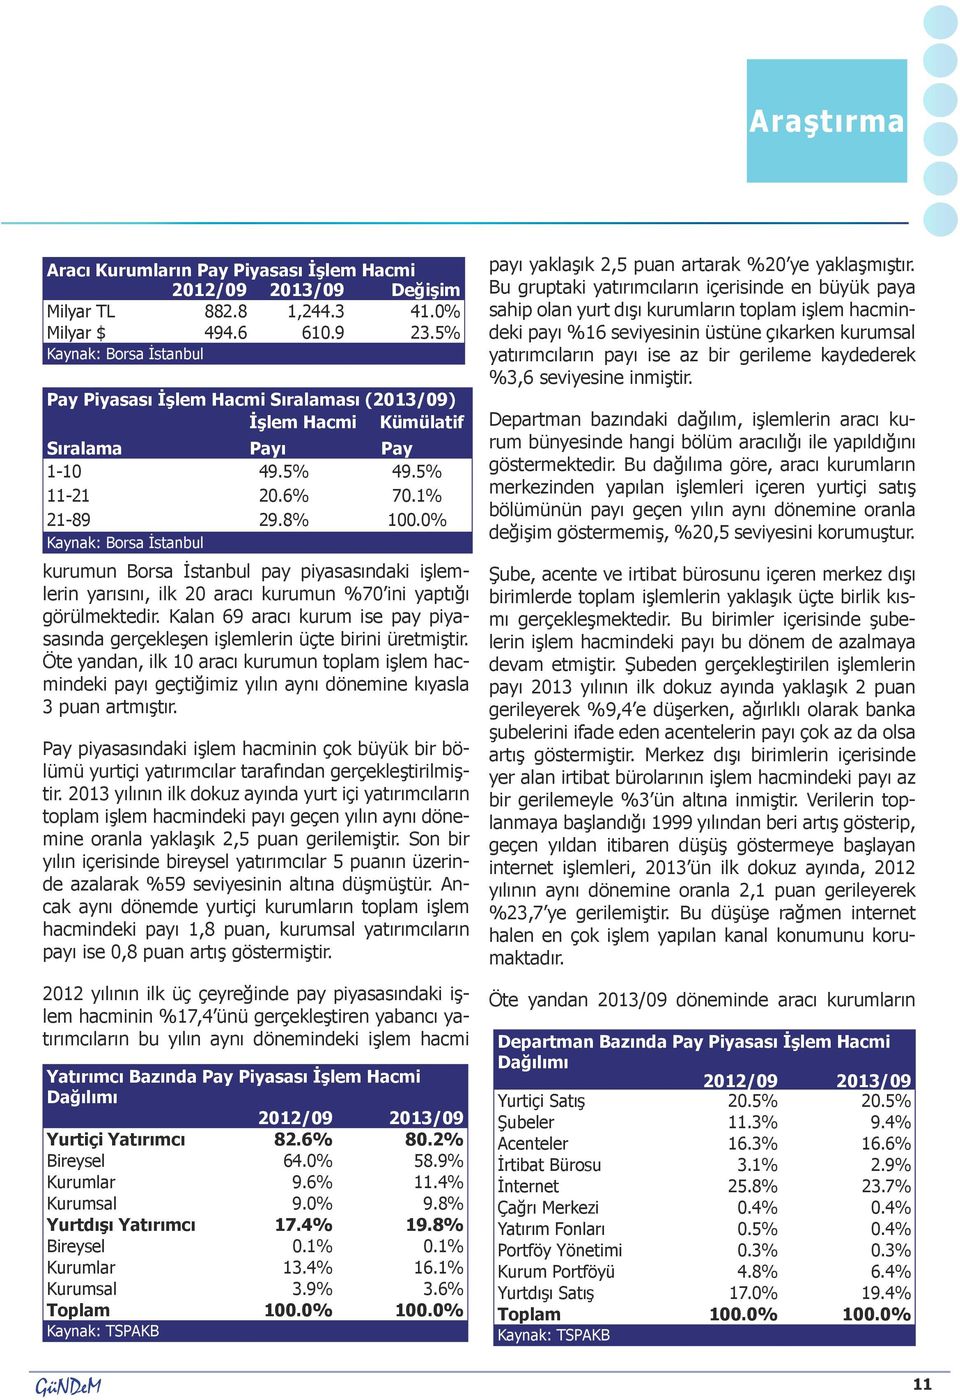 0% Kaynak: Borsa İstanbul kurumun Borsa İstanbul pay piyasasındaki işlemlerin yarısını, ilk 20 aracı kurumun %70 ini yaptığı görülmektedir.